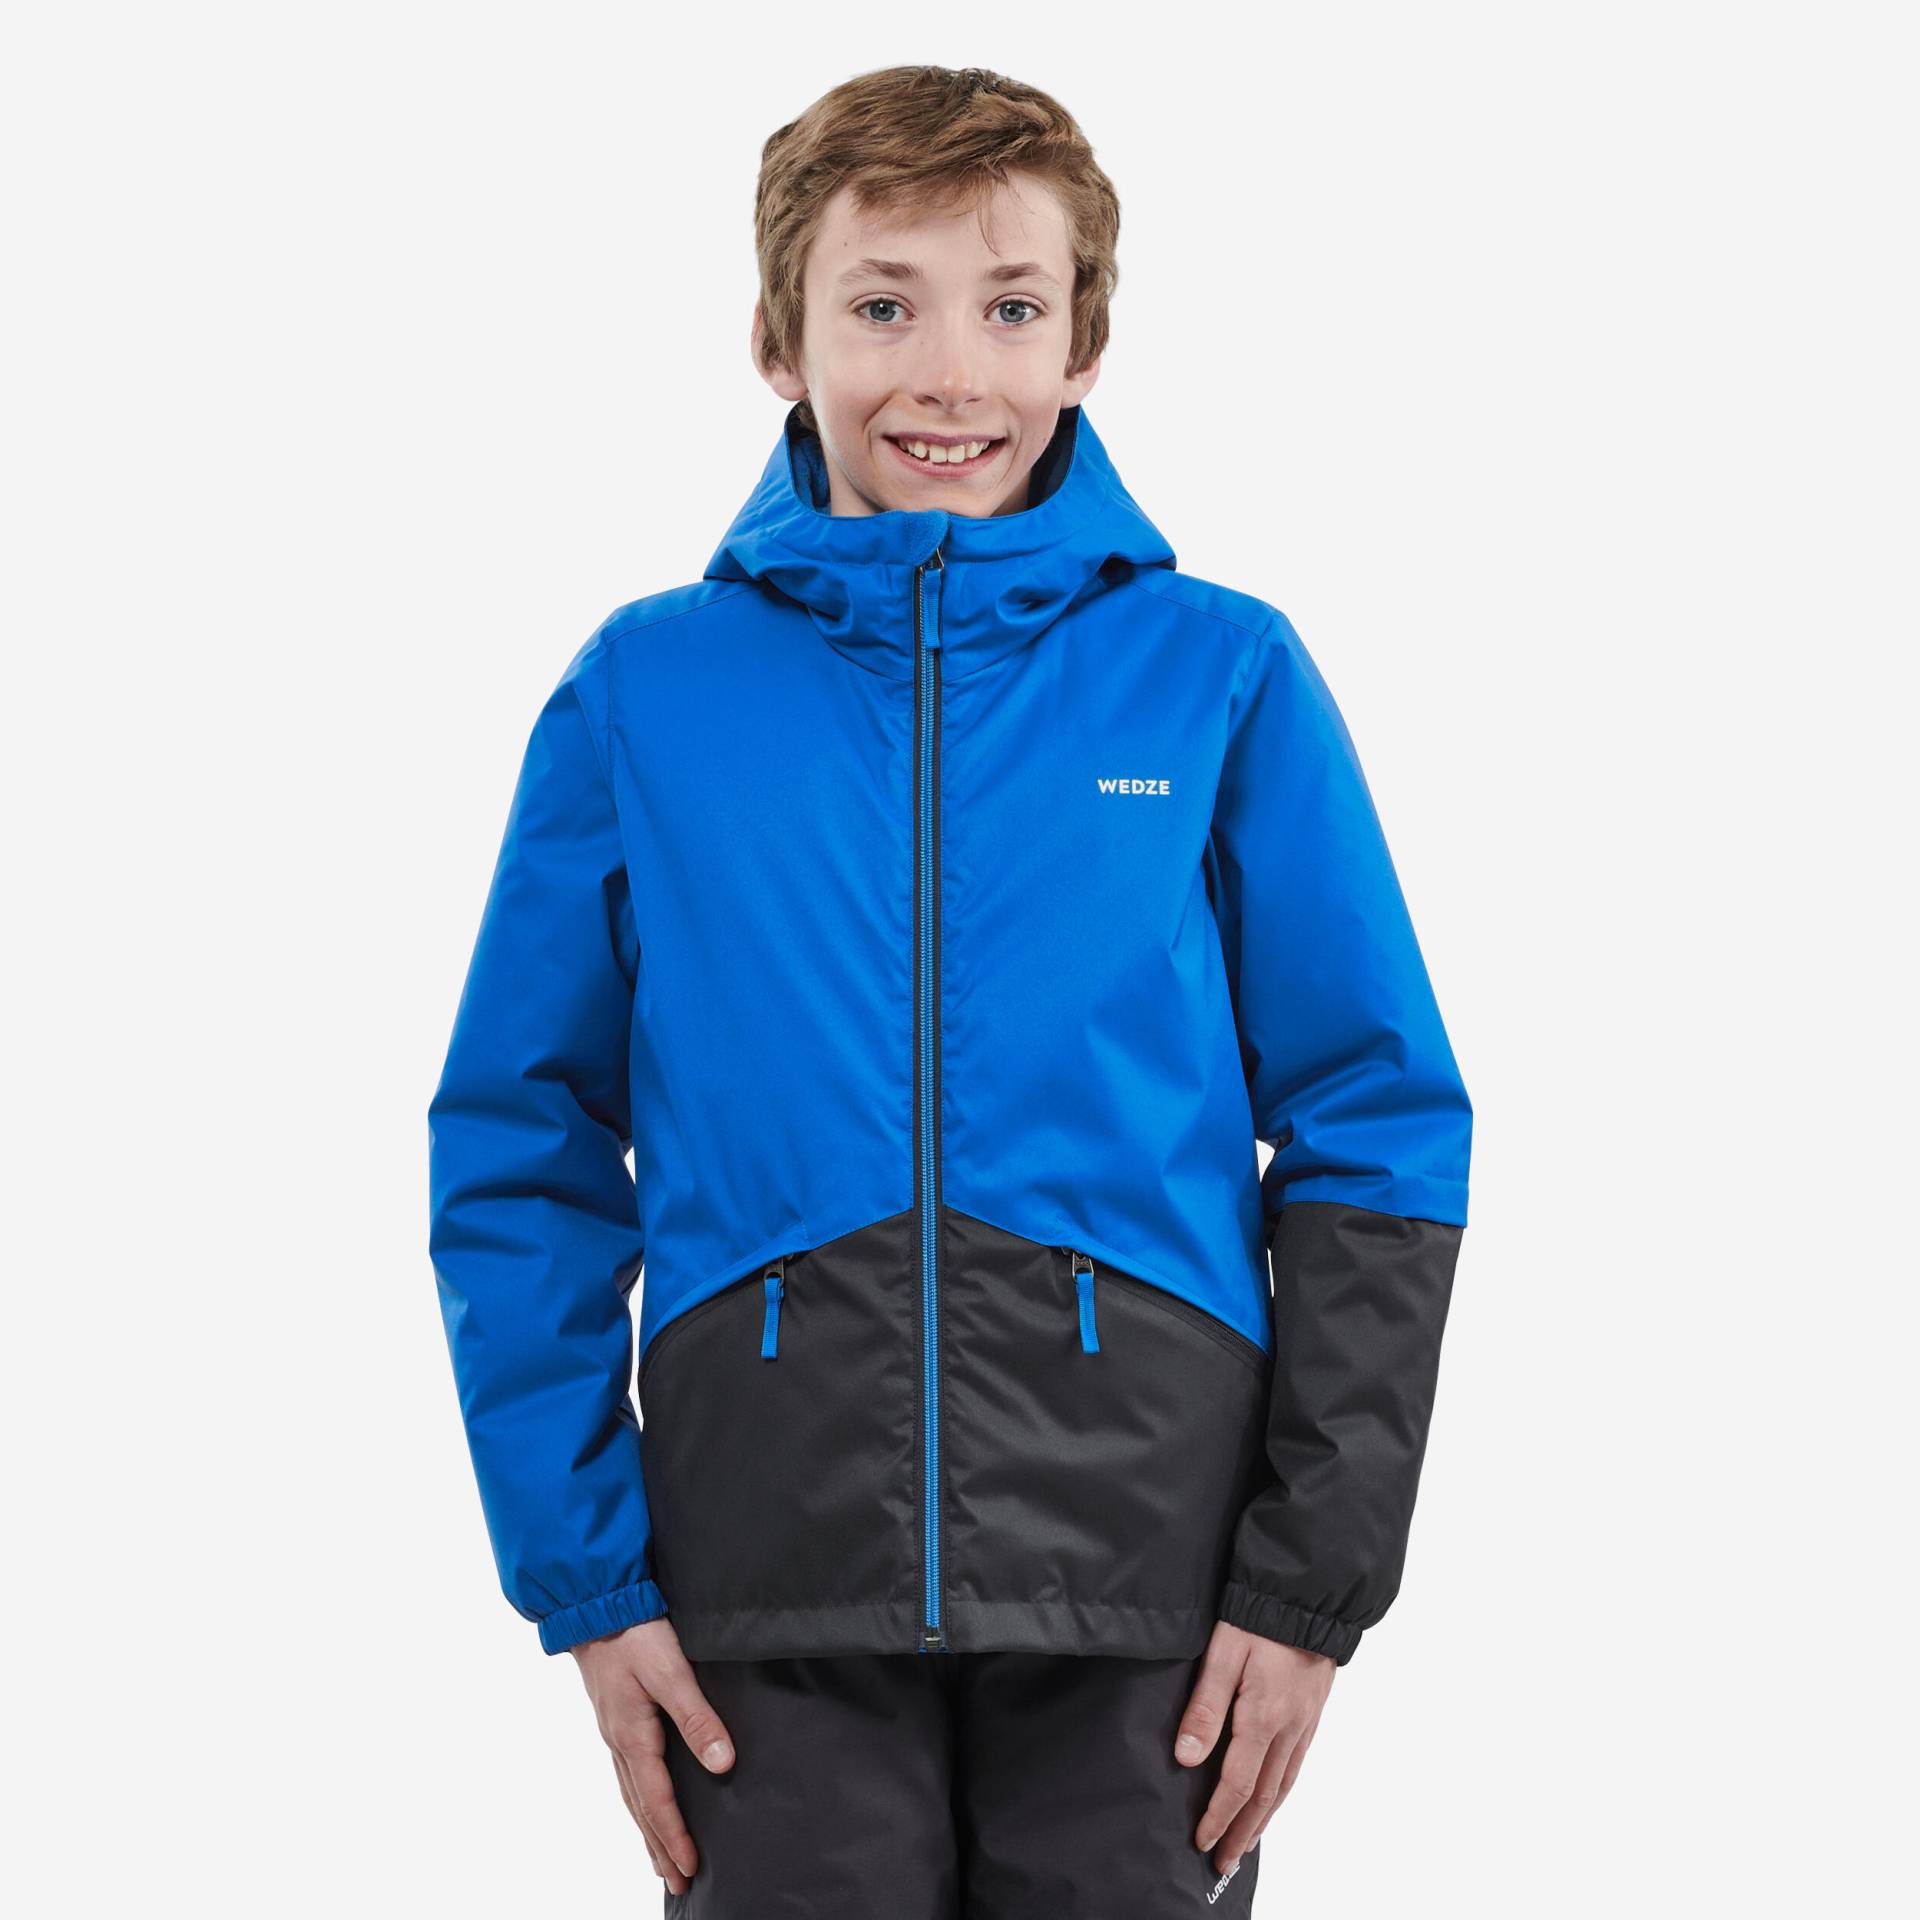 Skijacke 100 warm wasserdicht Kinder blau von WEDZE